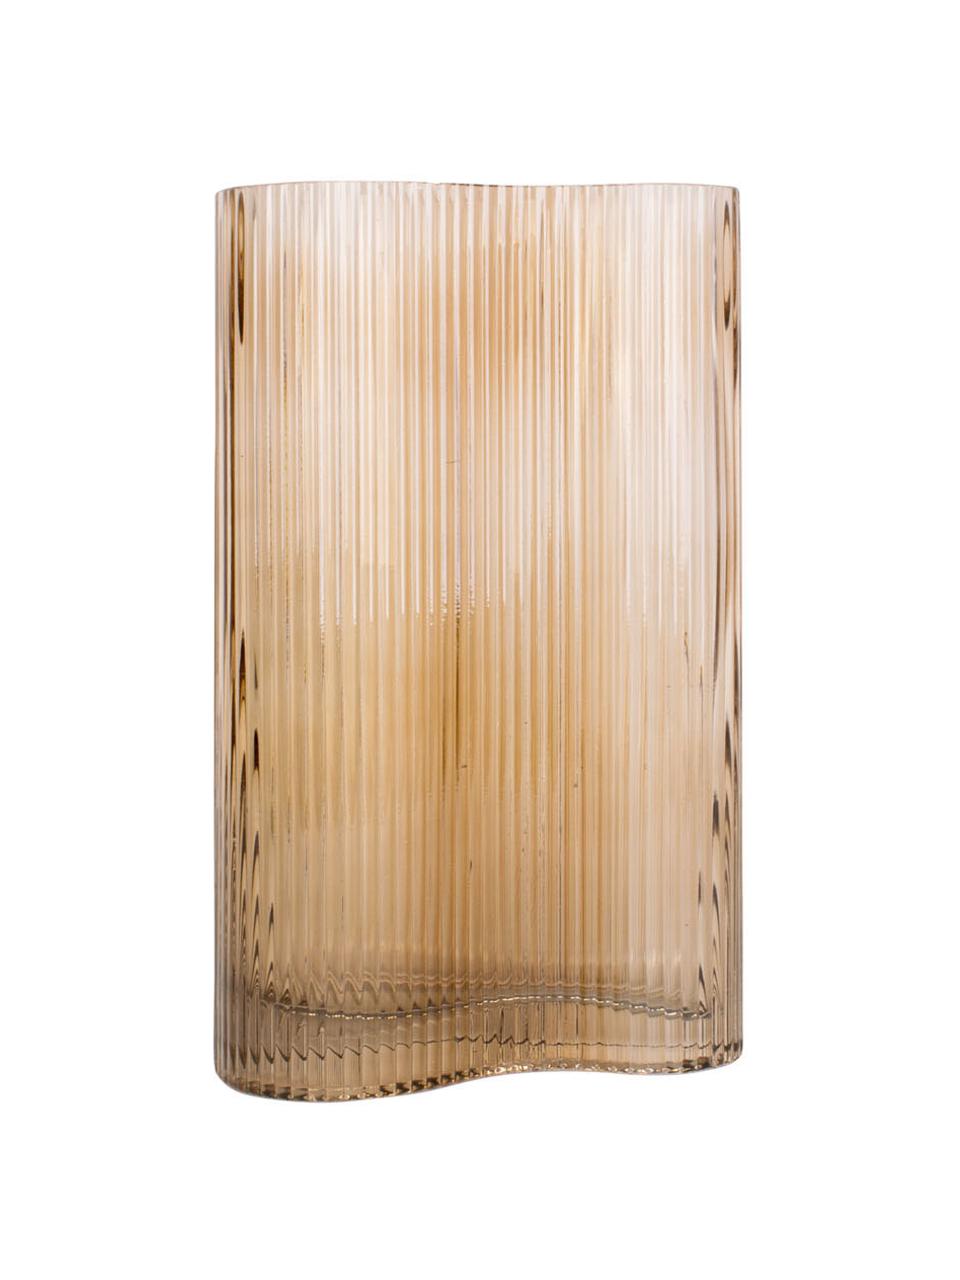 Glas-Vase Allure Wave in Hellbraun, Glas, getönt, Hellbraun, 10 x 27 cm